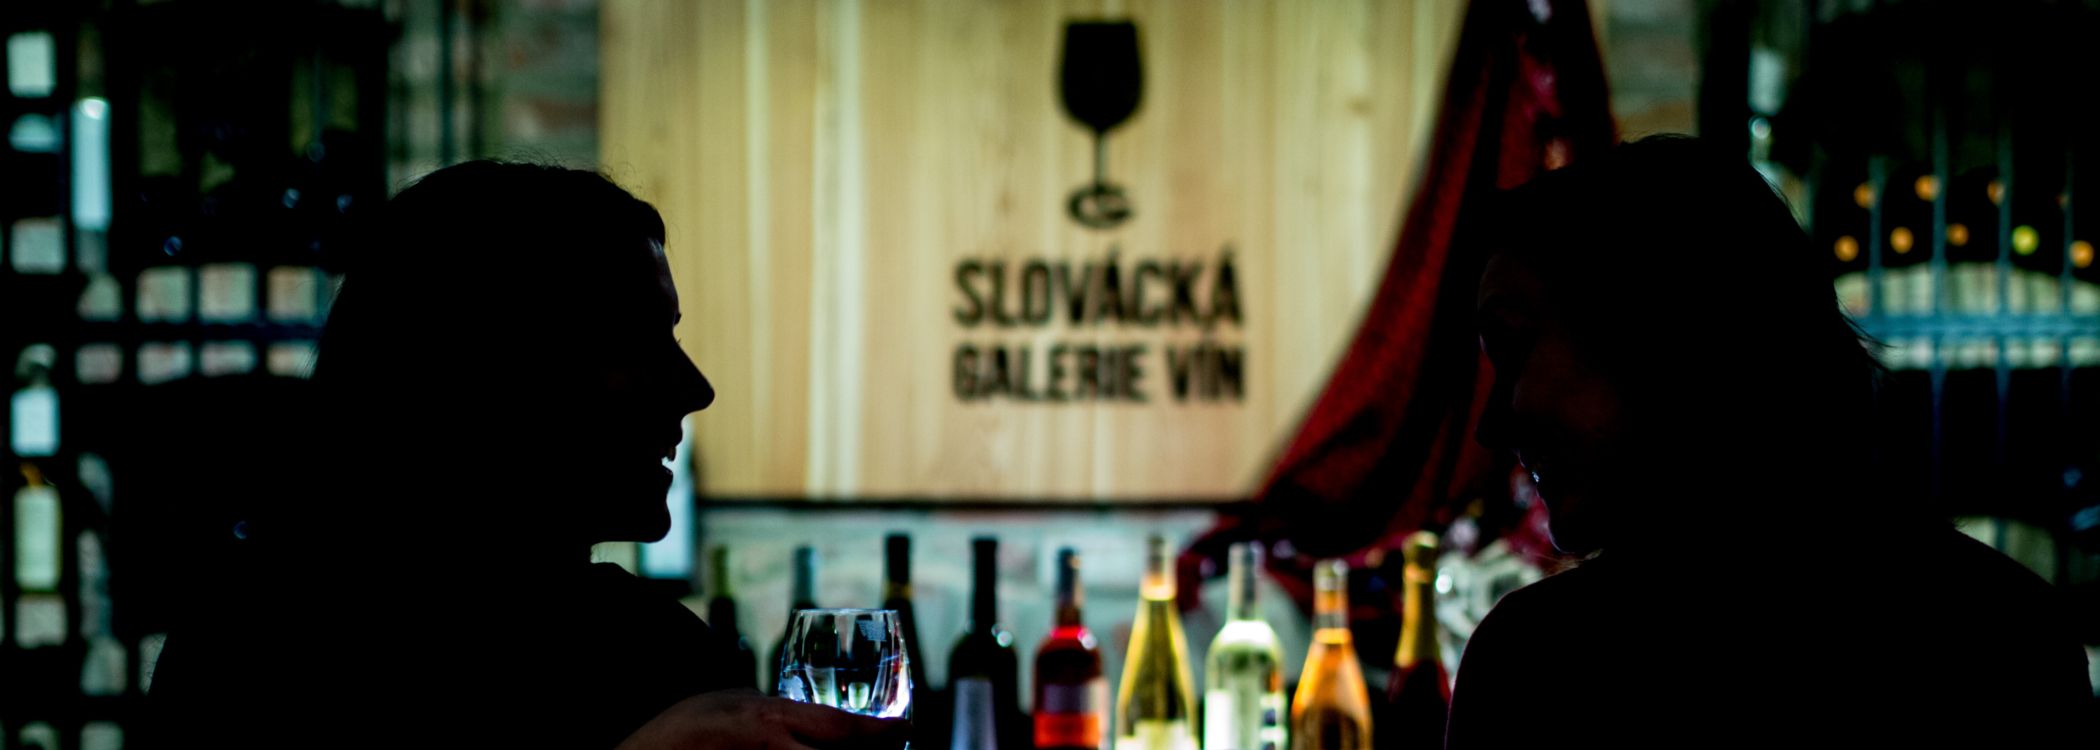 Slovácká galerie vín - interiér s víny